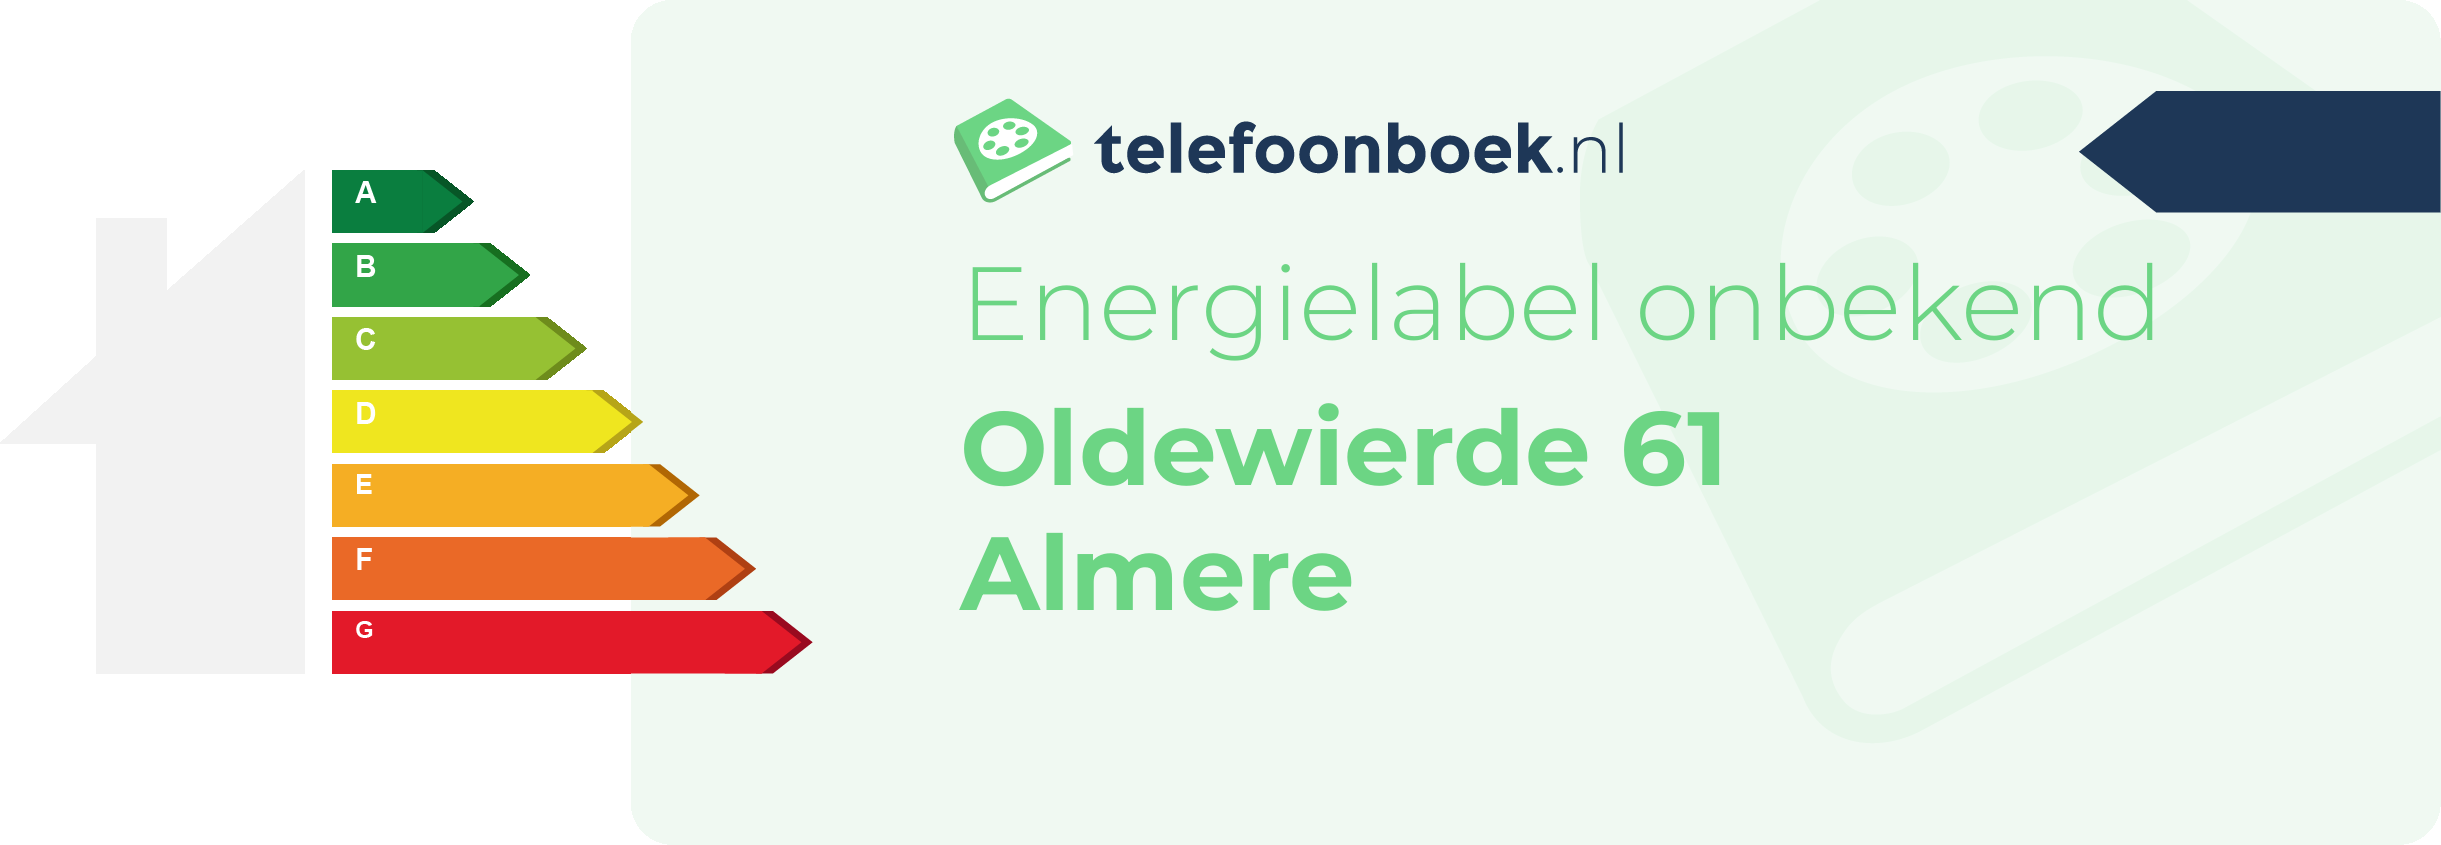 Energielabel Oldewierde 61 Almere